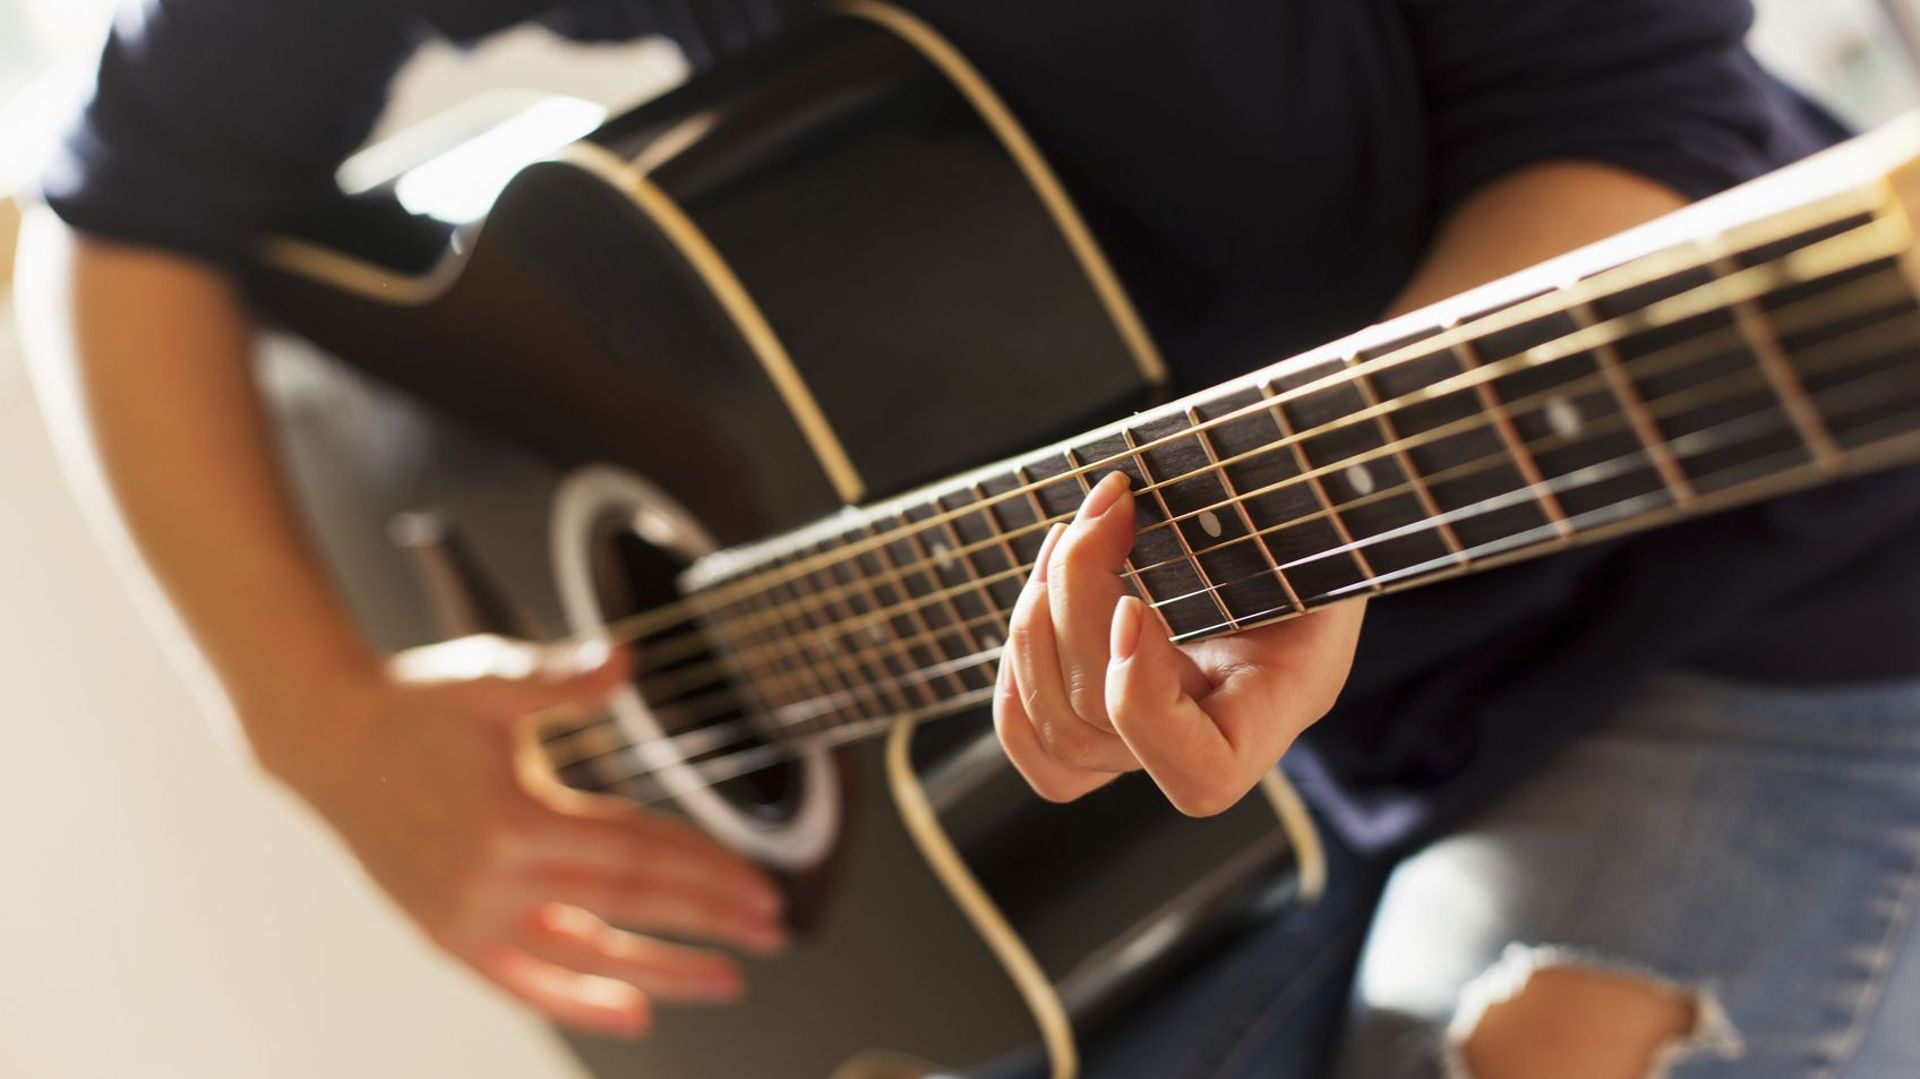 Apprendre à jouer d'un instrument de musique ralentit le vieillissement de notre cerveau